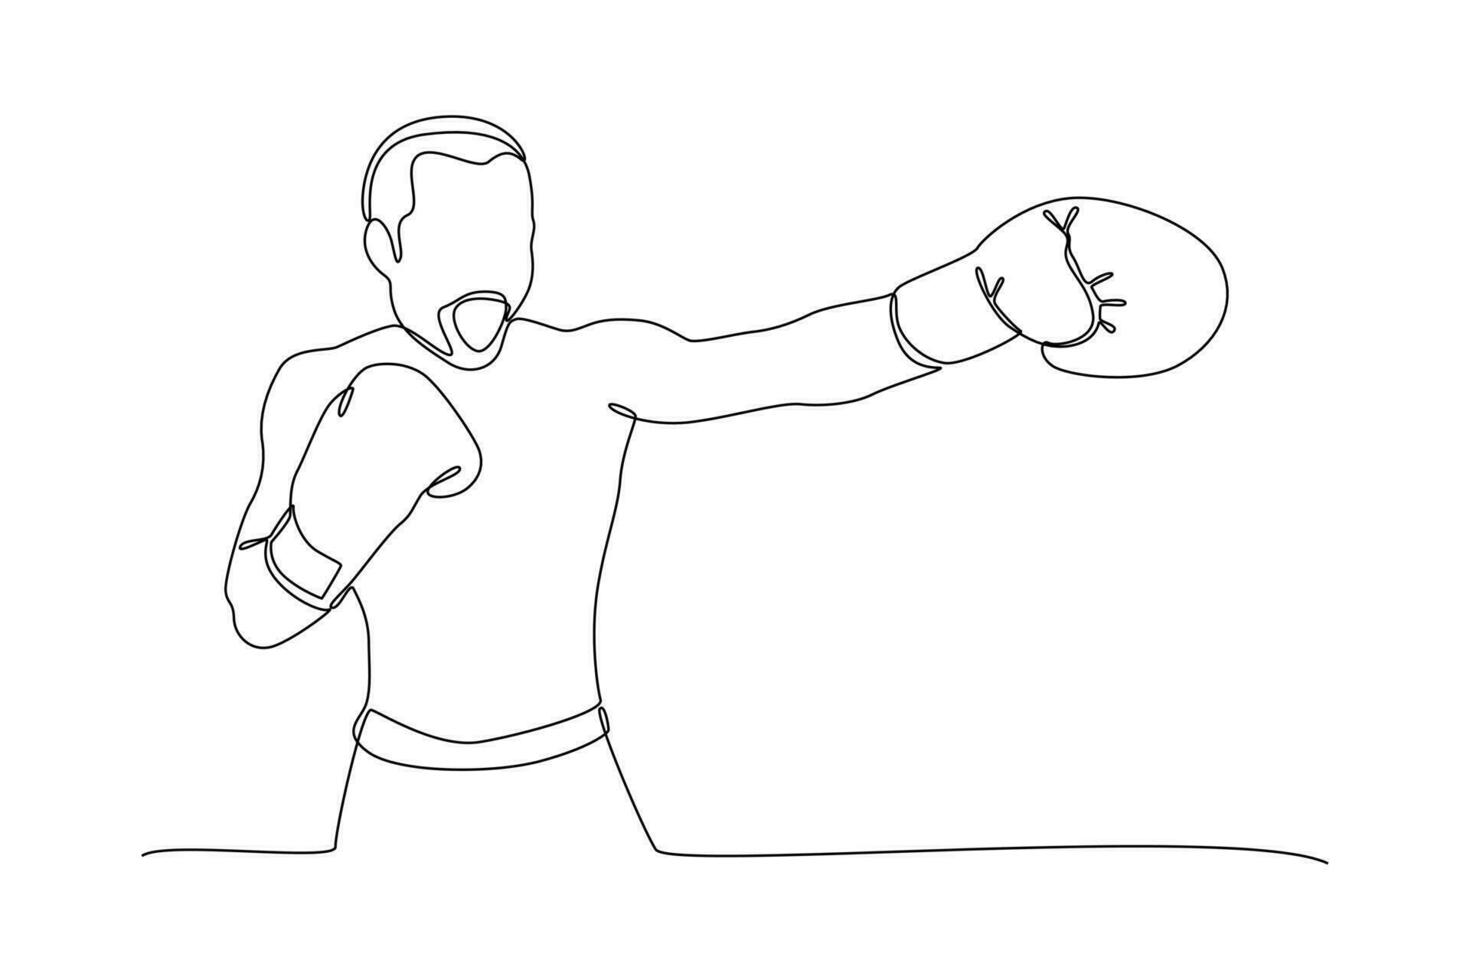 kontinuierlich einer Linie Zeichnung Boxer, muai thailändisch Kämpfer. Boxen, Sport, trainieren Konzept. Gekritzel Vektor Illustration.